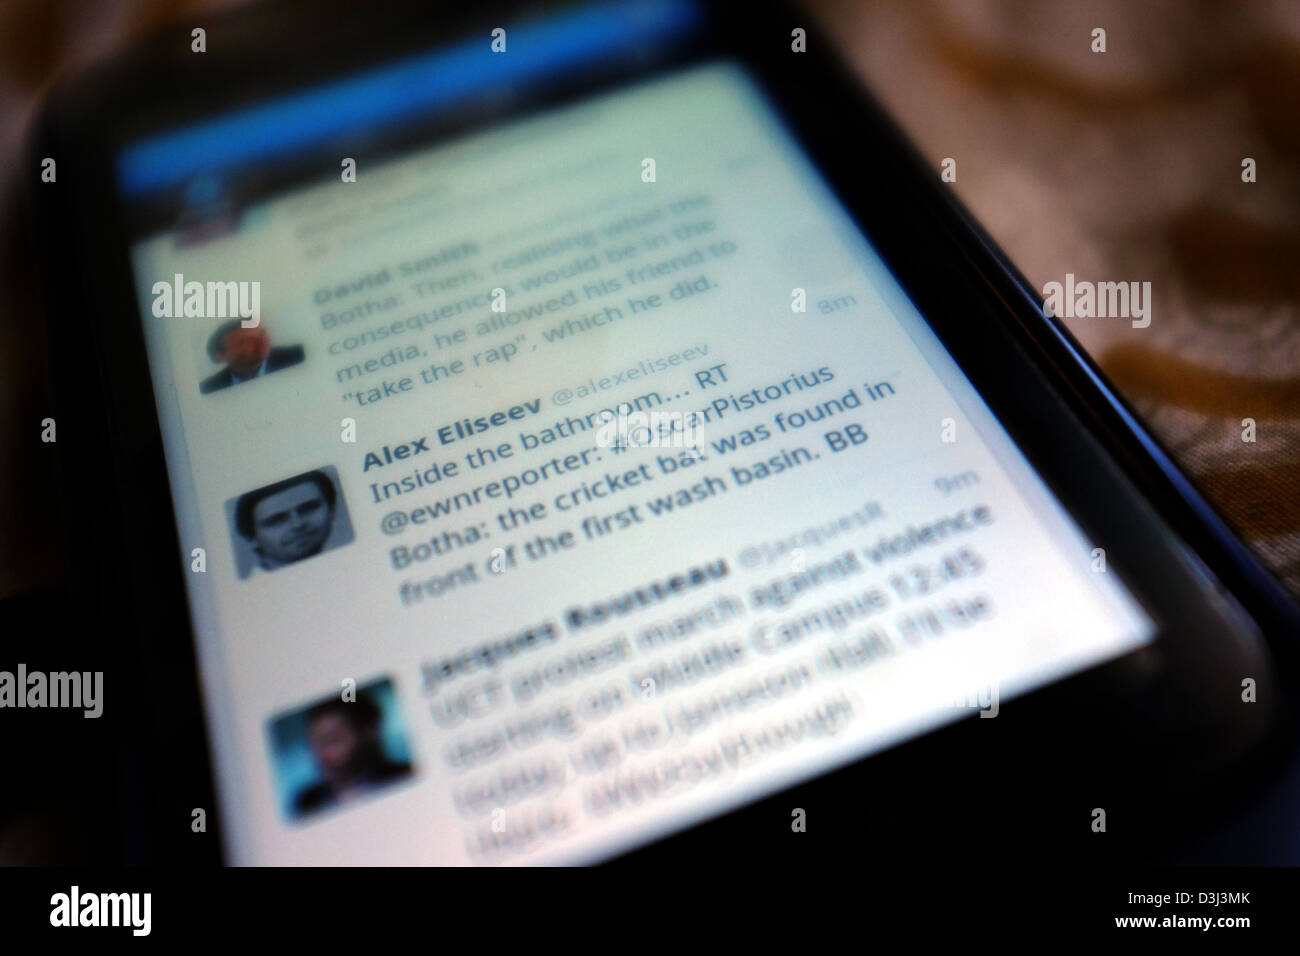 Un téléphone intelligent écran montrant le twitter de rapports concernant l'Oscar Pistorius et son procès pour meurtre en Afrique du Sud en 2013. Banque D'Images